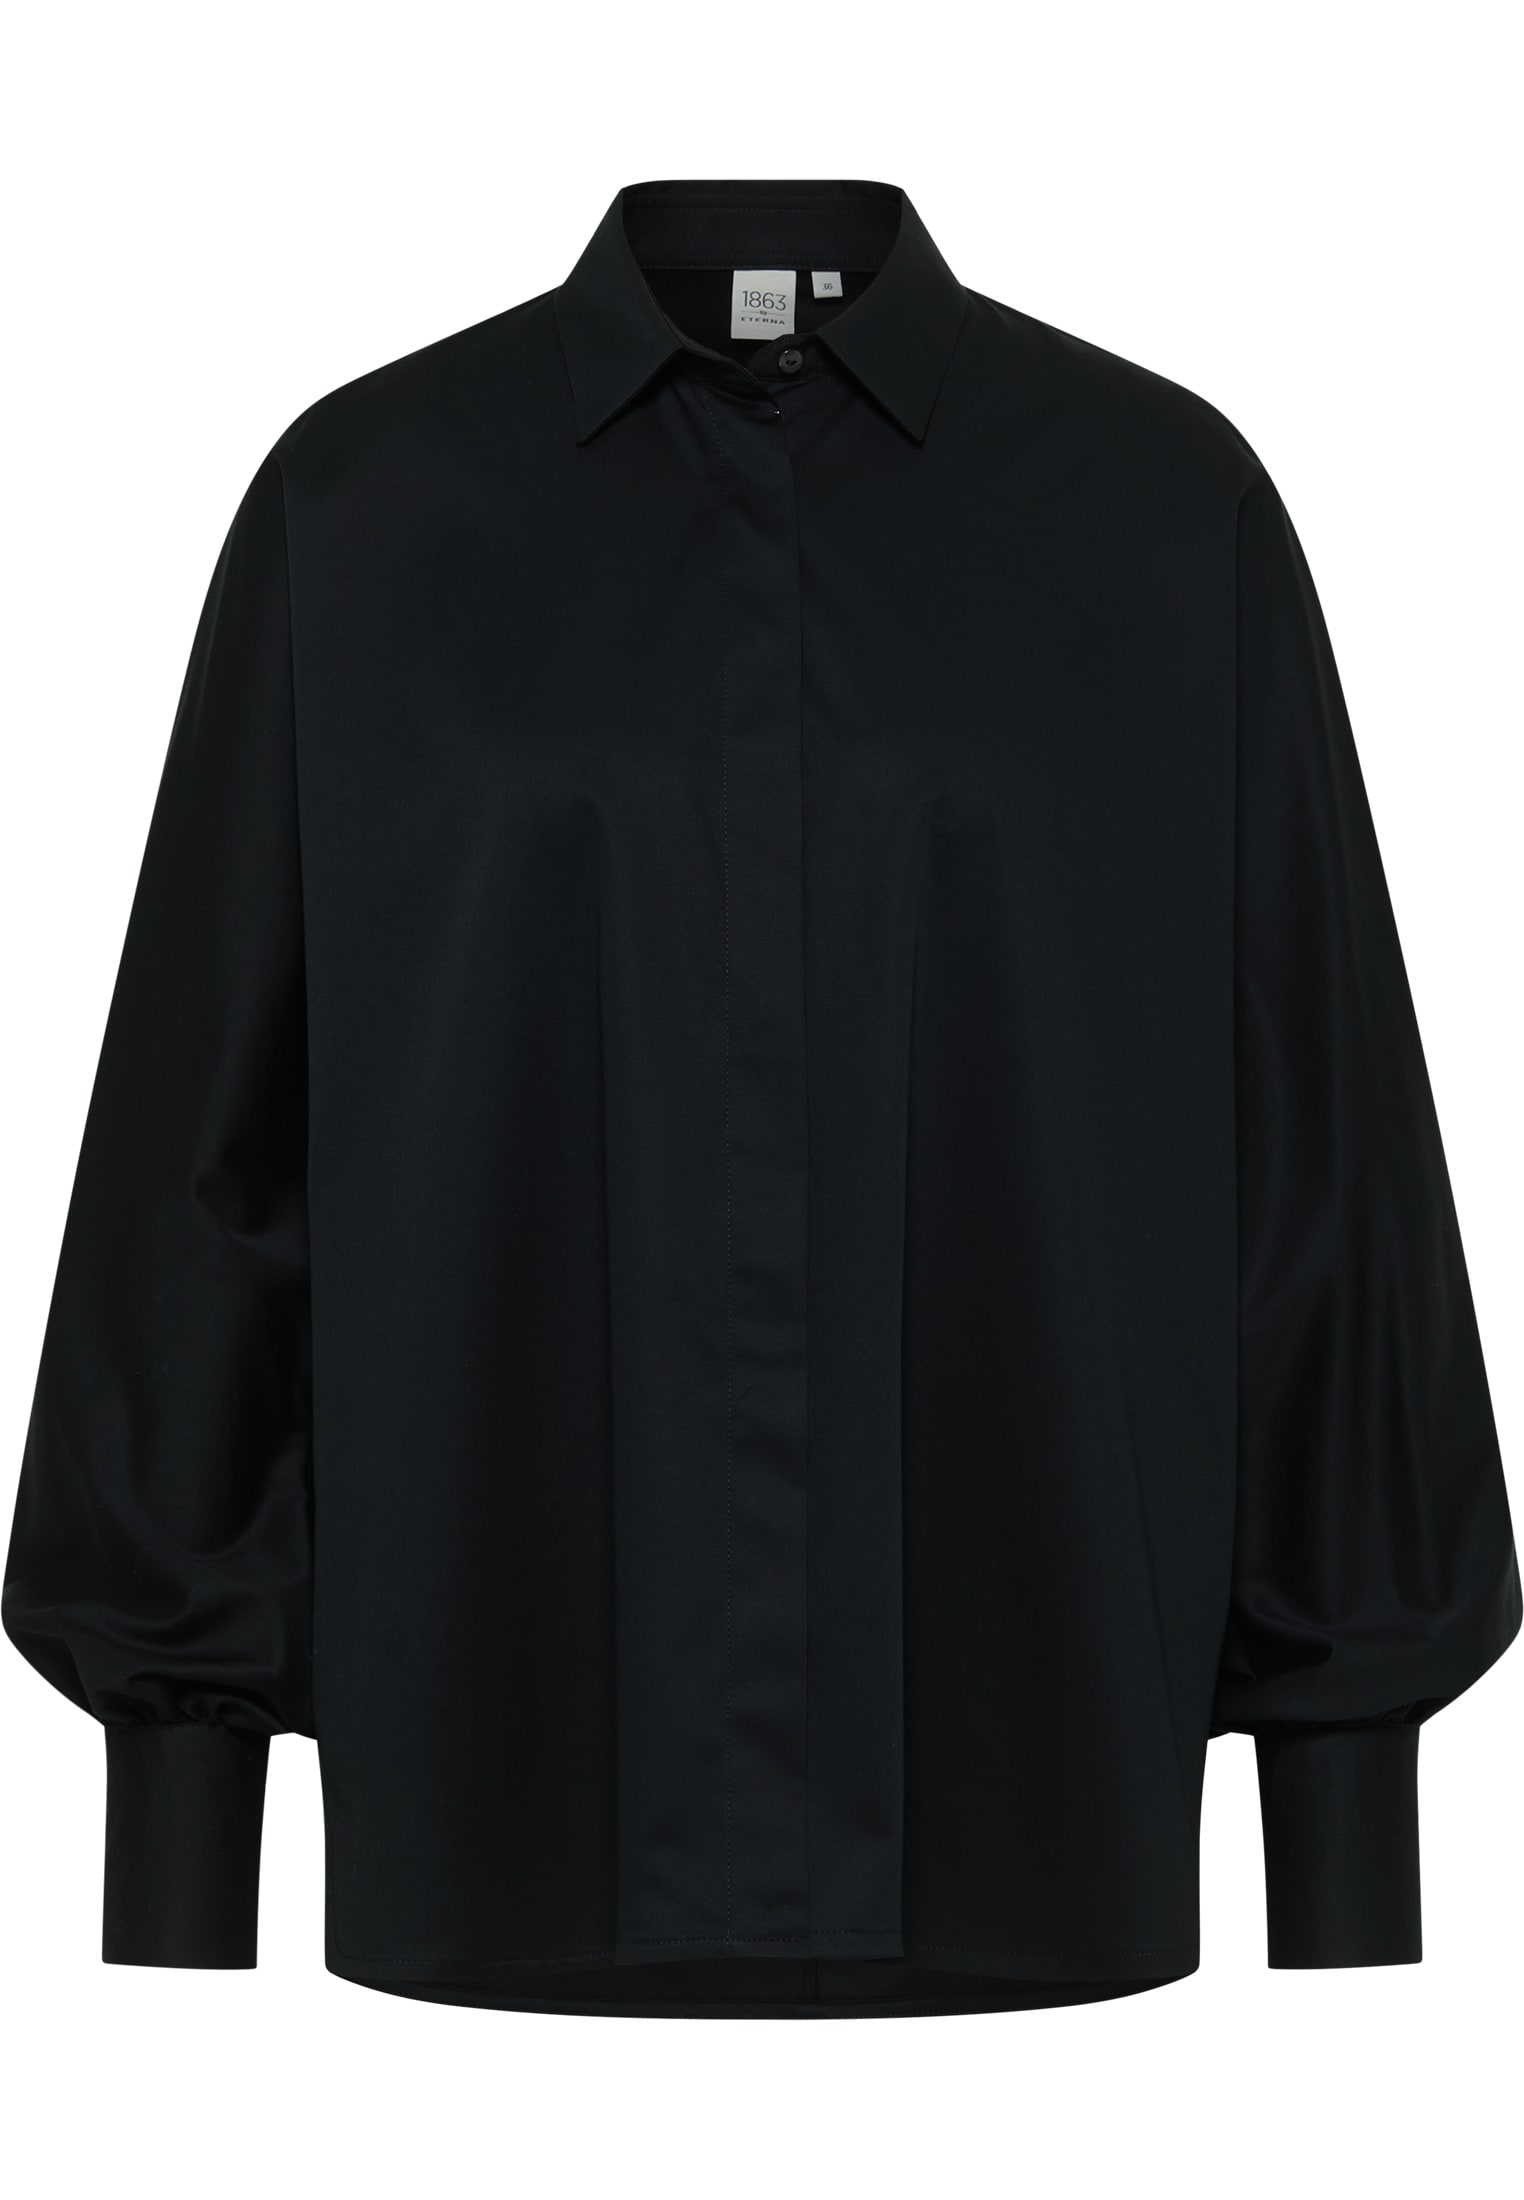 Satin Shirt Bluse in schwarz unifarben | schwarz | 40 | Langarm |  2BL04026-03-91-40-1/1